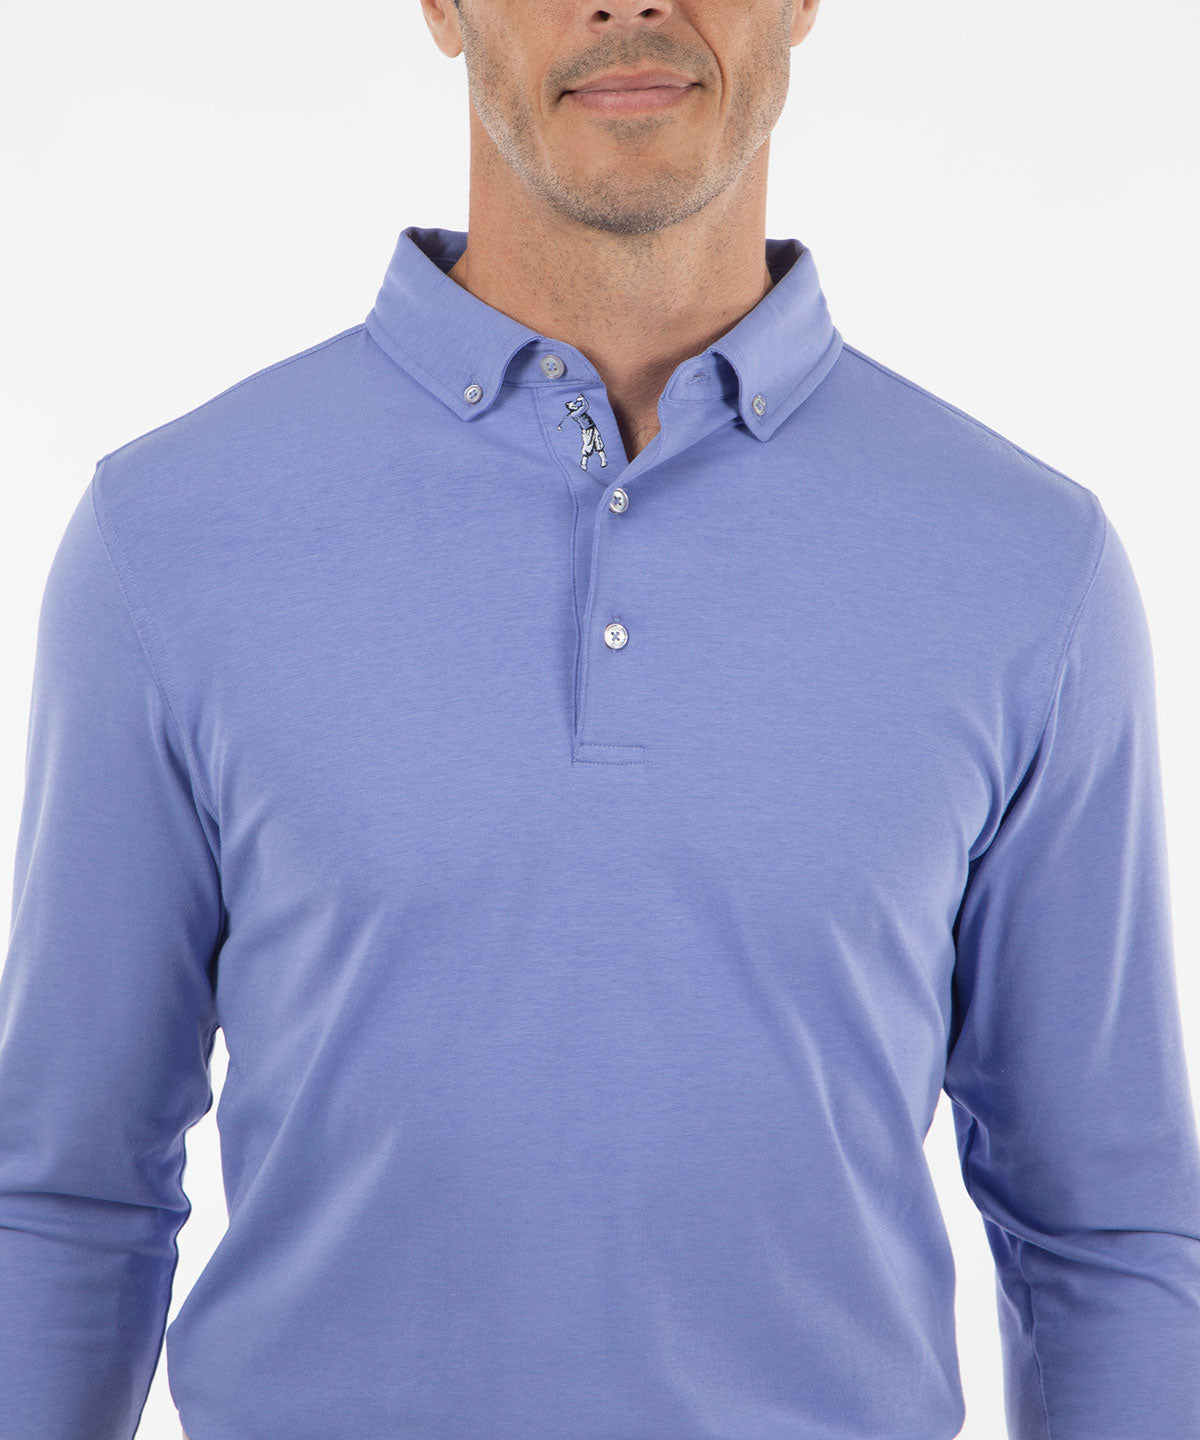 Performance Cotton Button-Down Collar Long-Sleeve Polo